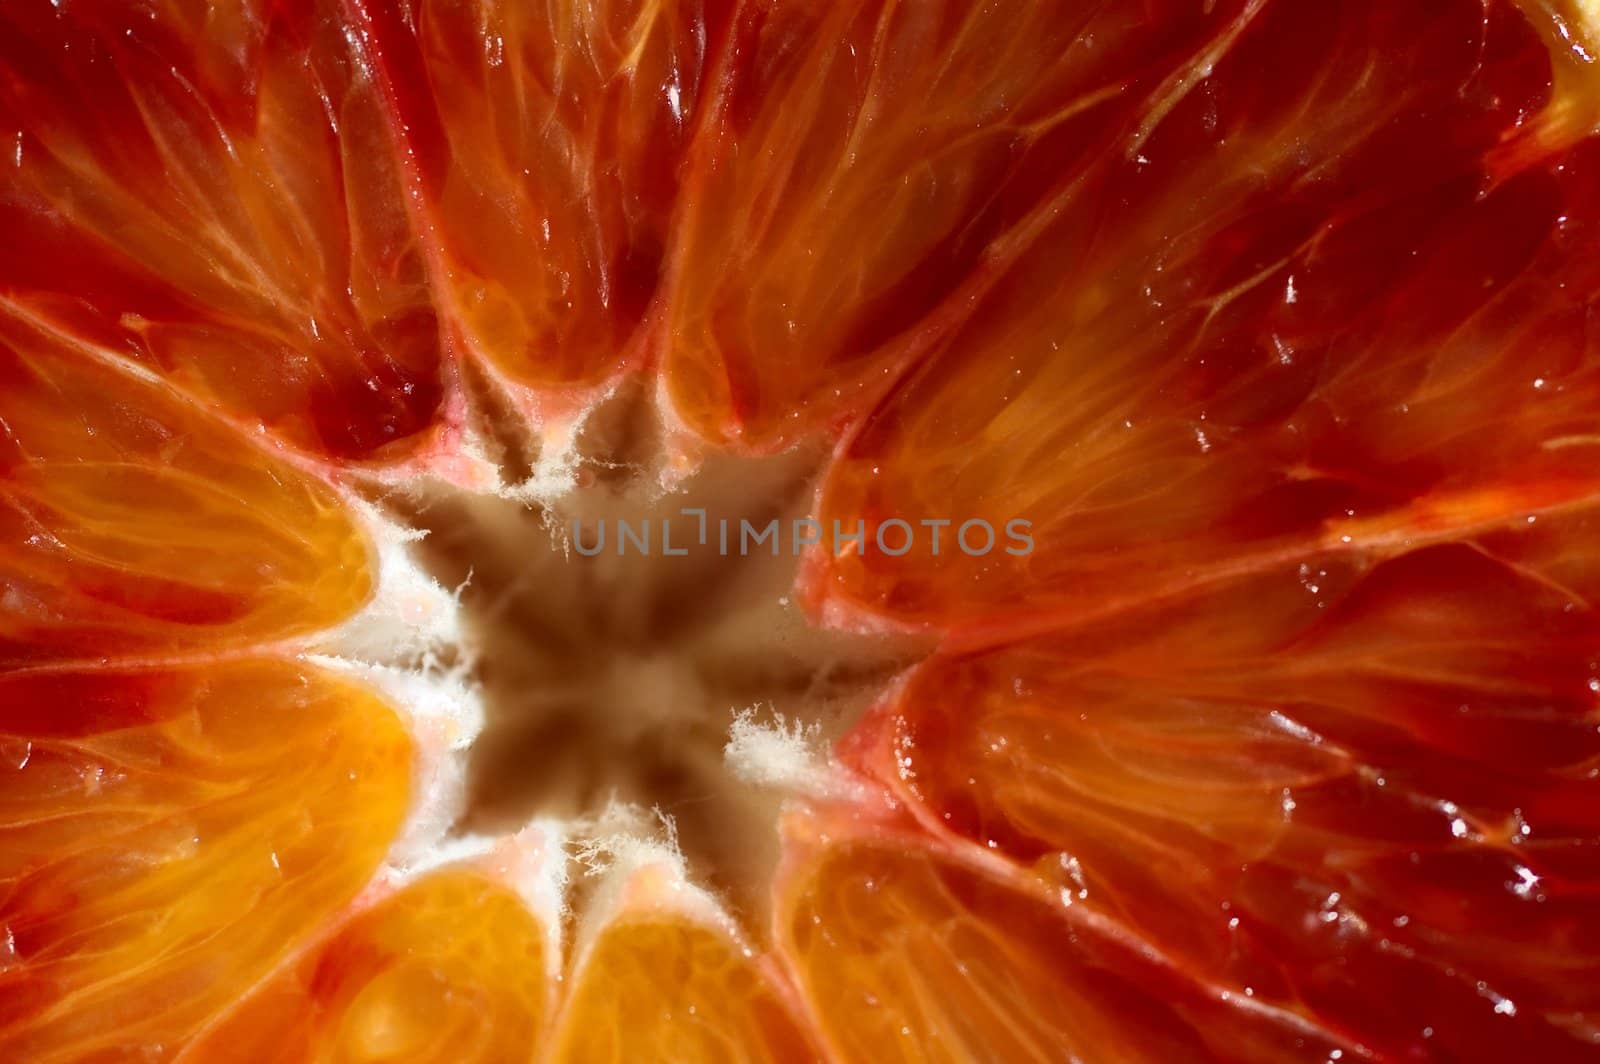 A closeup of a red orange